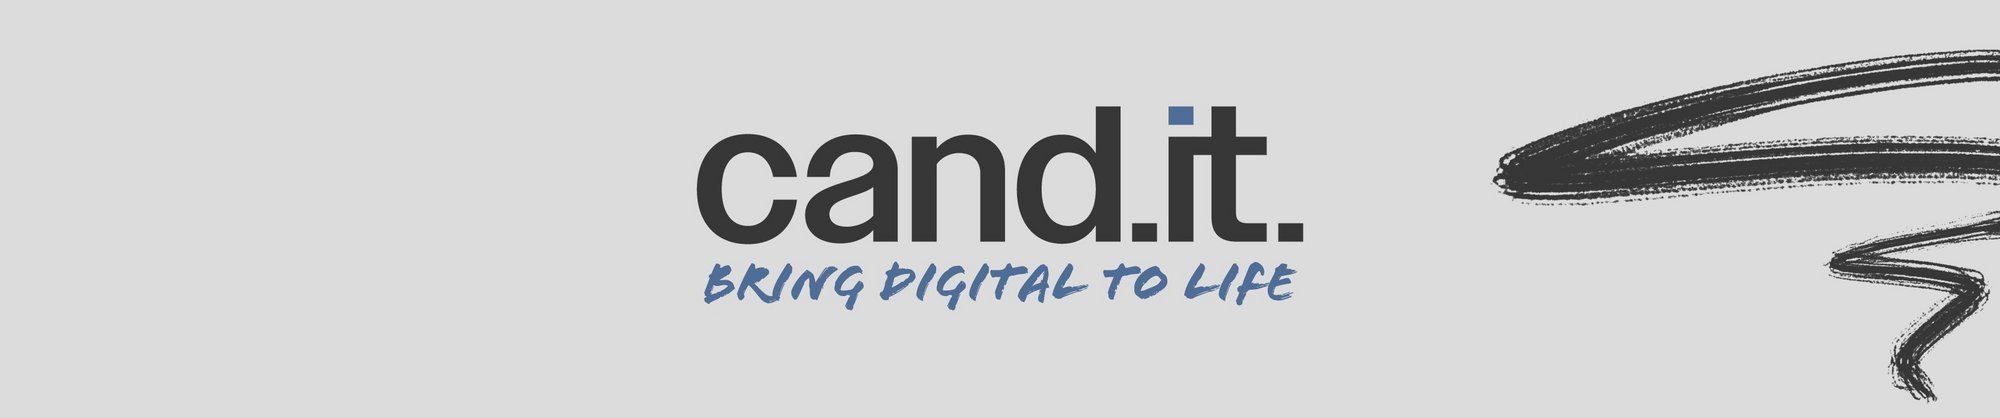 Coverbillede med slogan "Cand.it. - bring digital to life", sort og blå skrift.